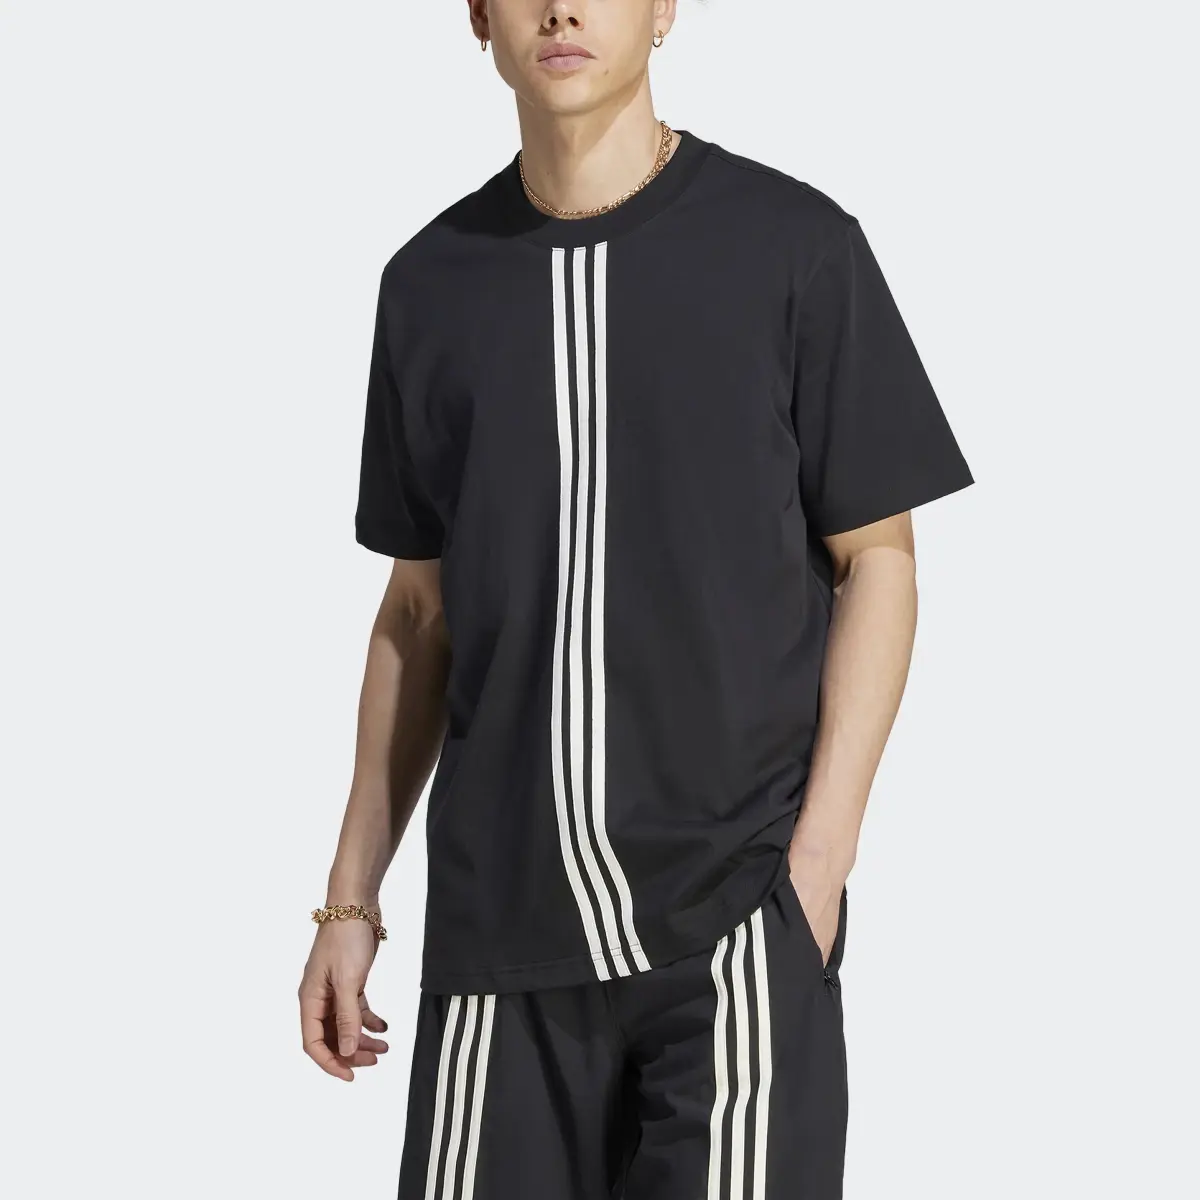 Adidas Koszulka Hack. 1